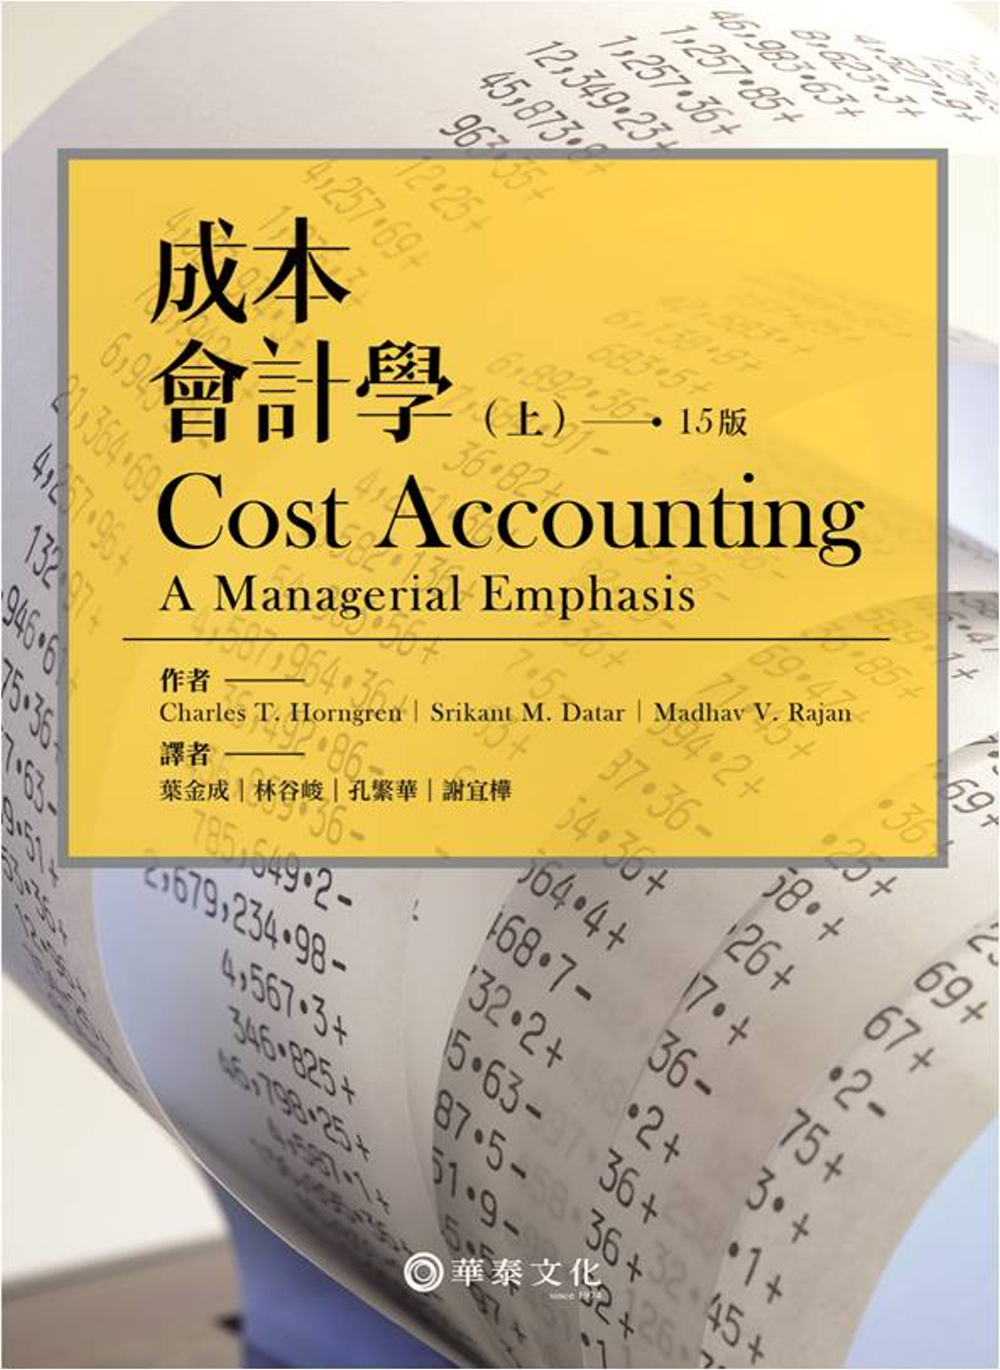 成本會計學(上)15版